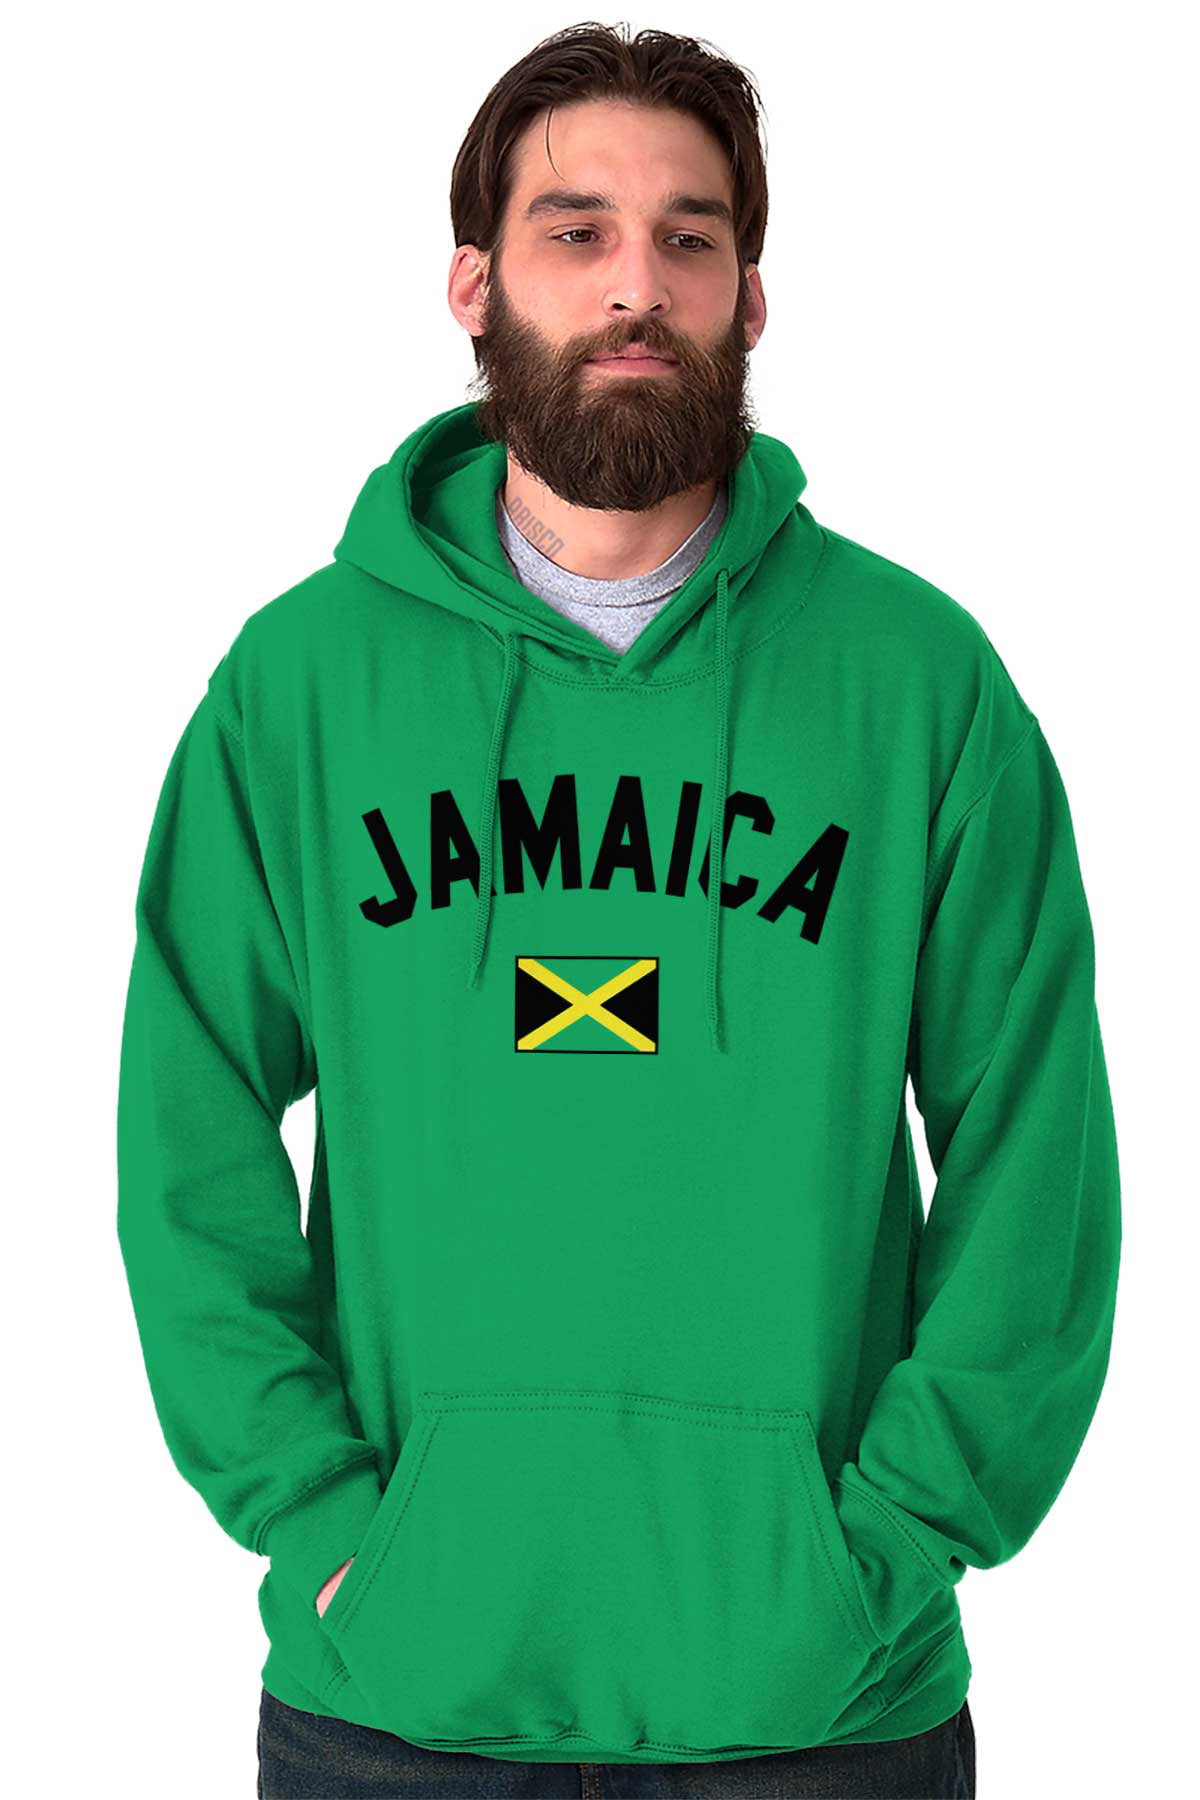 Jamaica Flag Womens Long Sleeve Casual Printed Sweatshirt Crop Top Hoodies